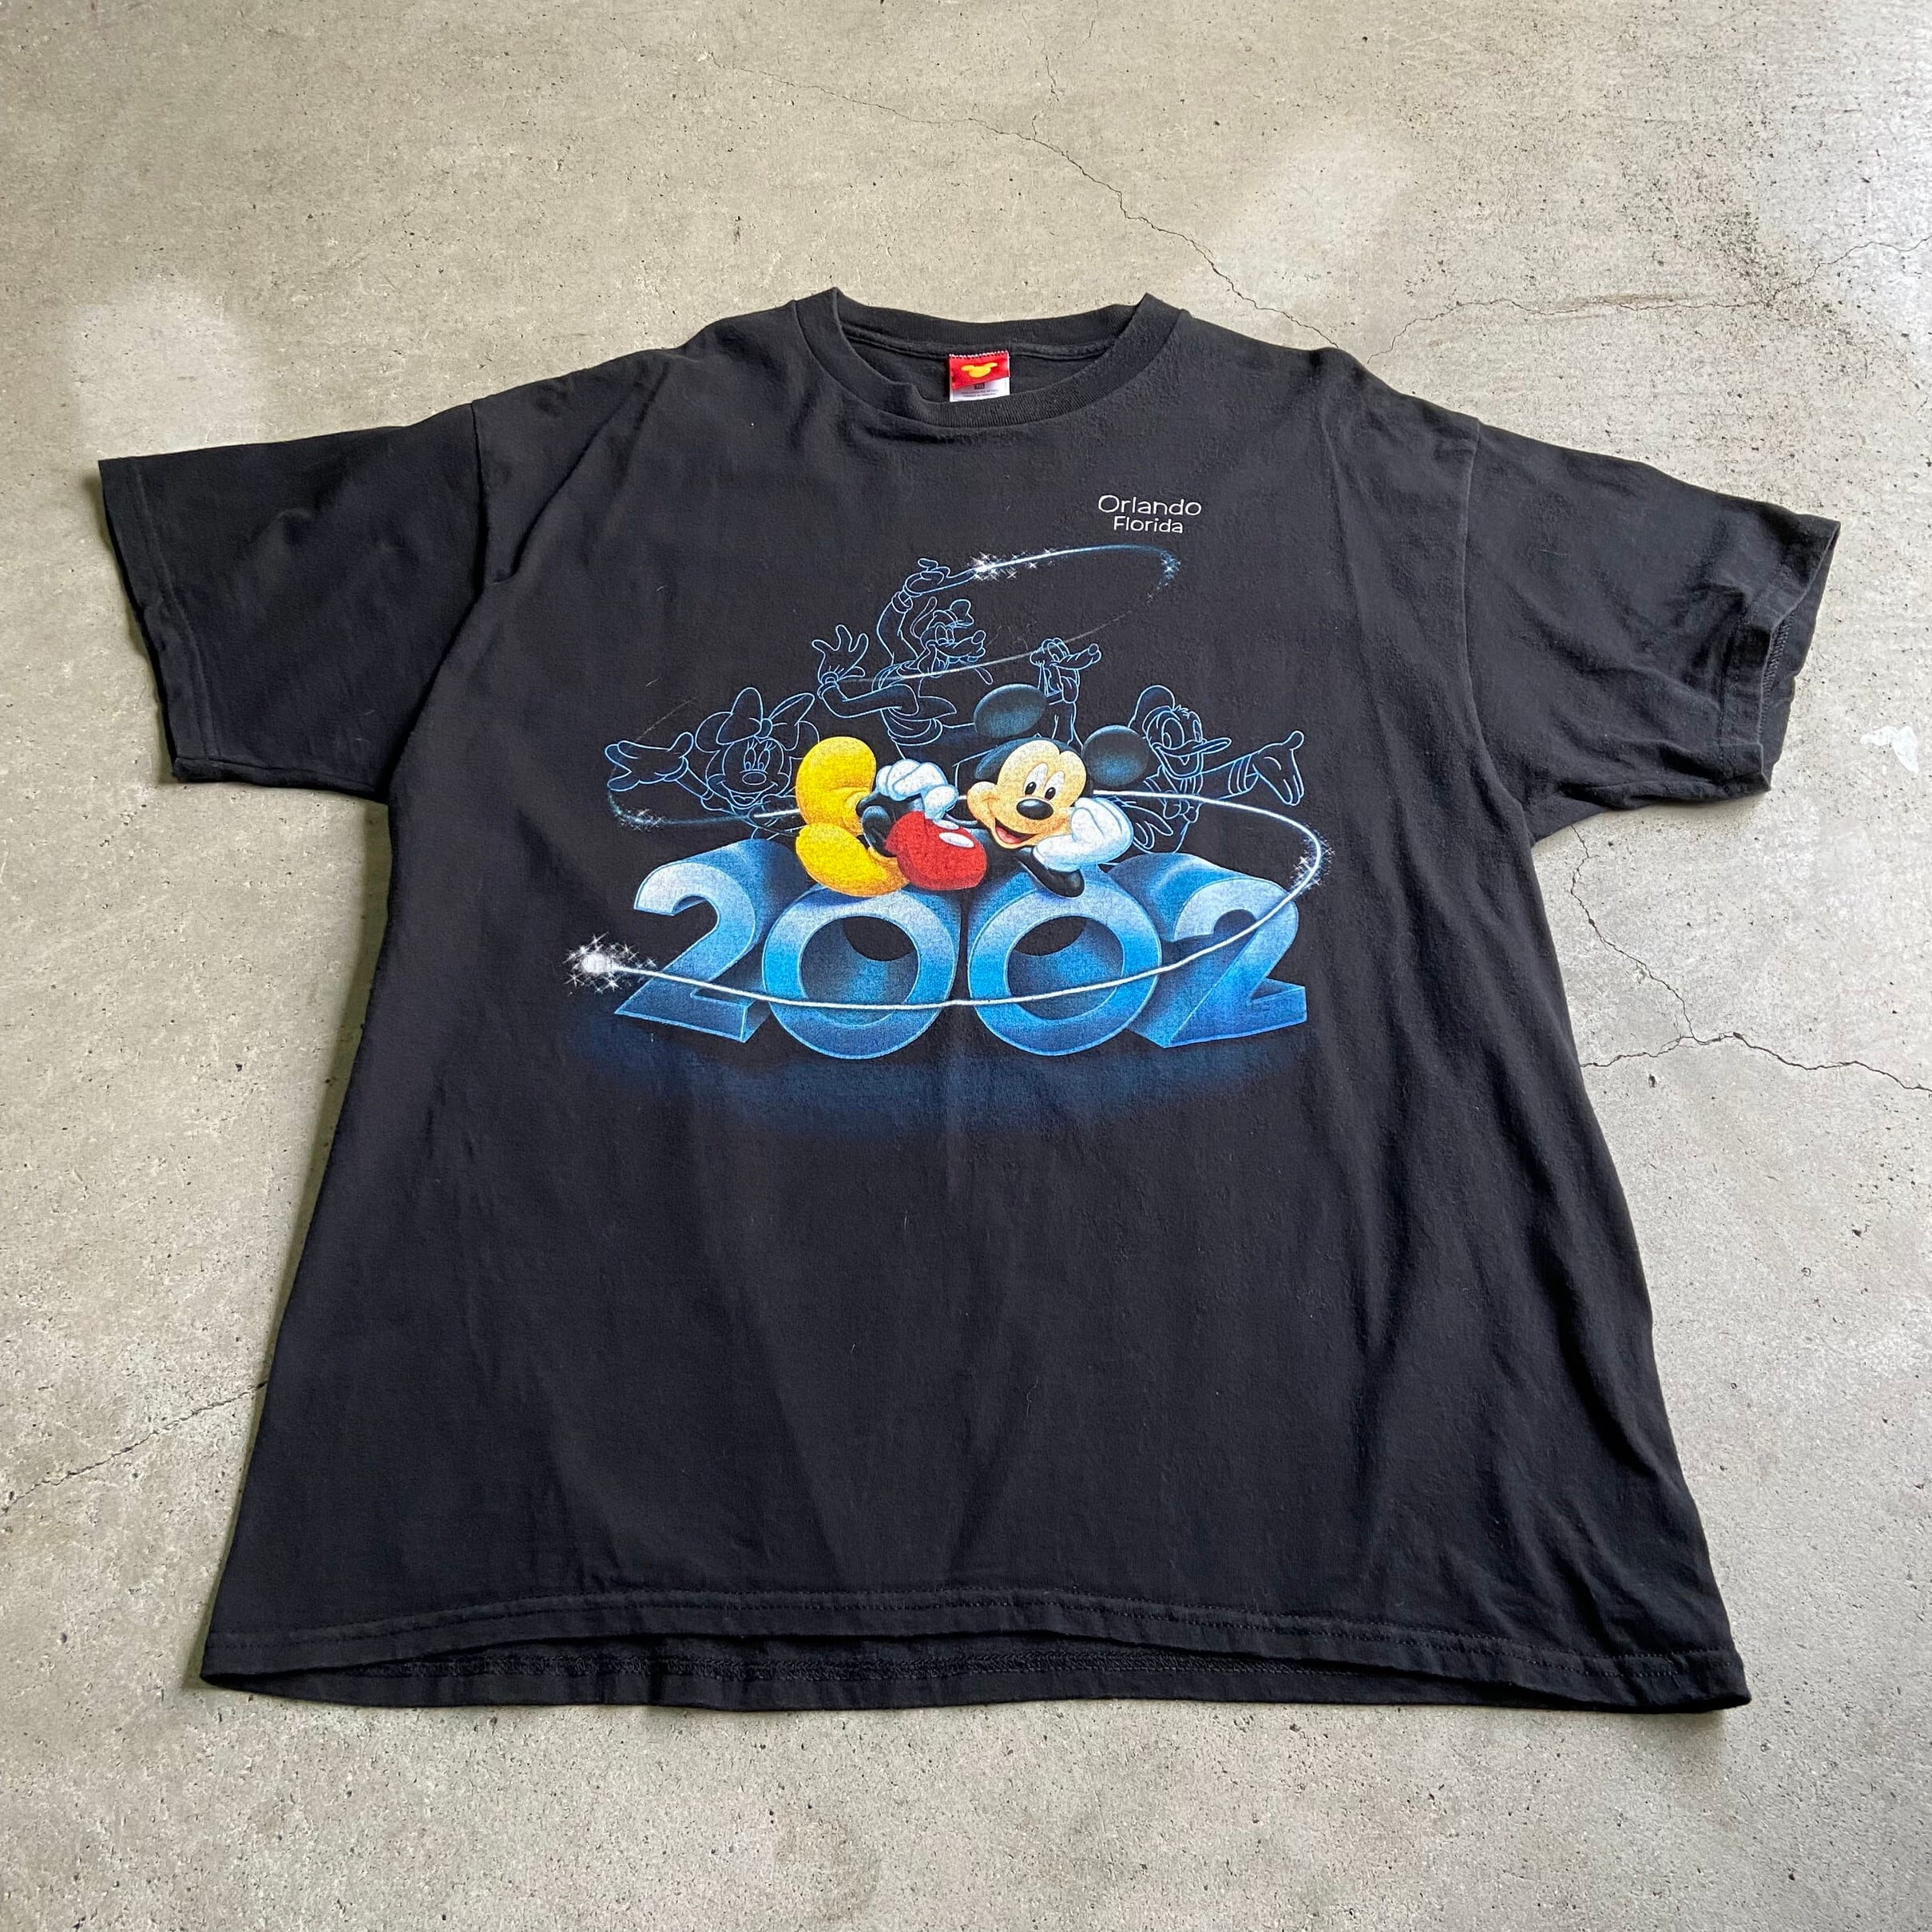 00s 90s vintage Disney Mickey プリントTシャツ 黒 - Tシャツ